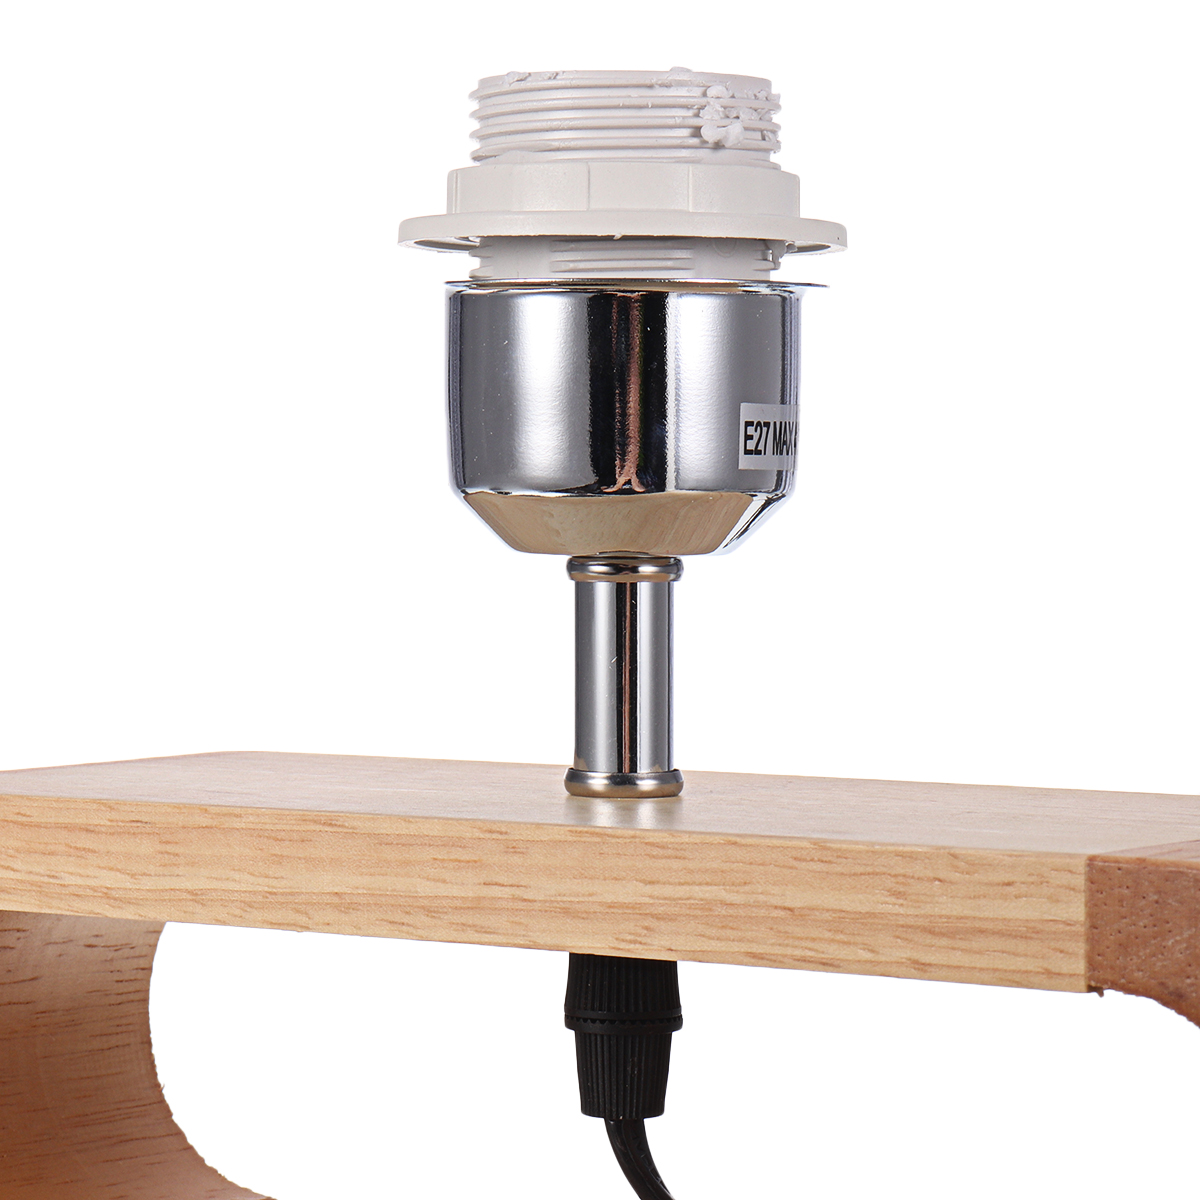 Wooden-Modern-Table-Lamp-Timber-Bedside-Lighting-Desk-Reading-Light-Brown-White-85-265V-1744461-9